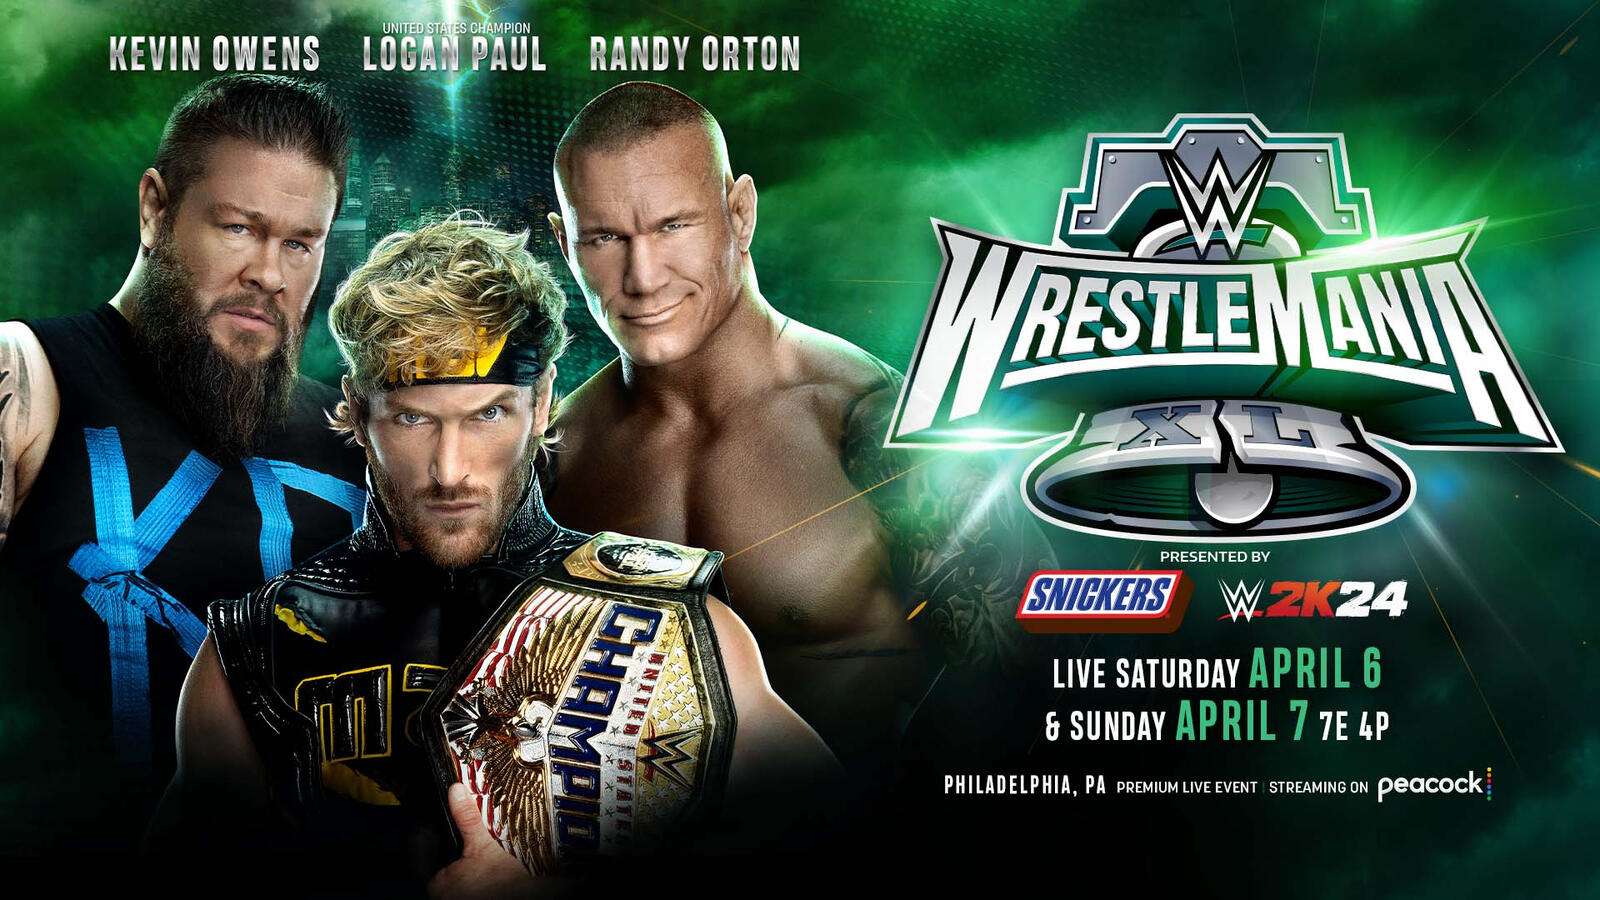 Logan Paul Kevin Owens Randy Orton WWE WrestleMania XL